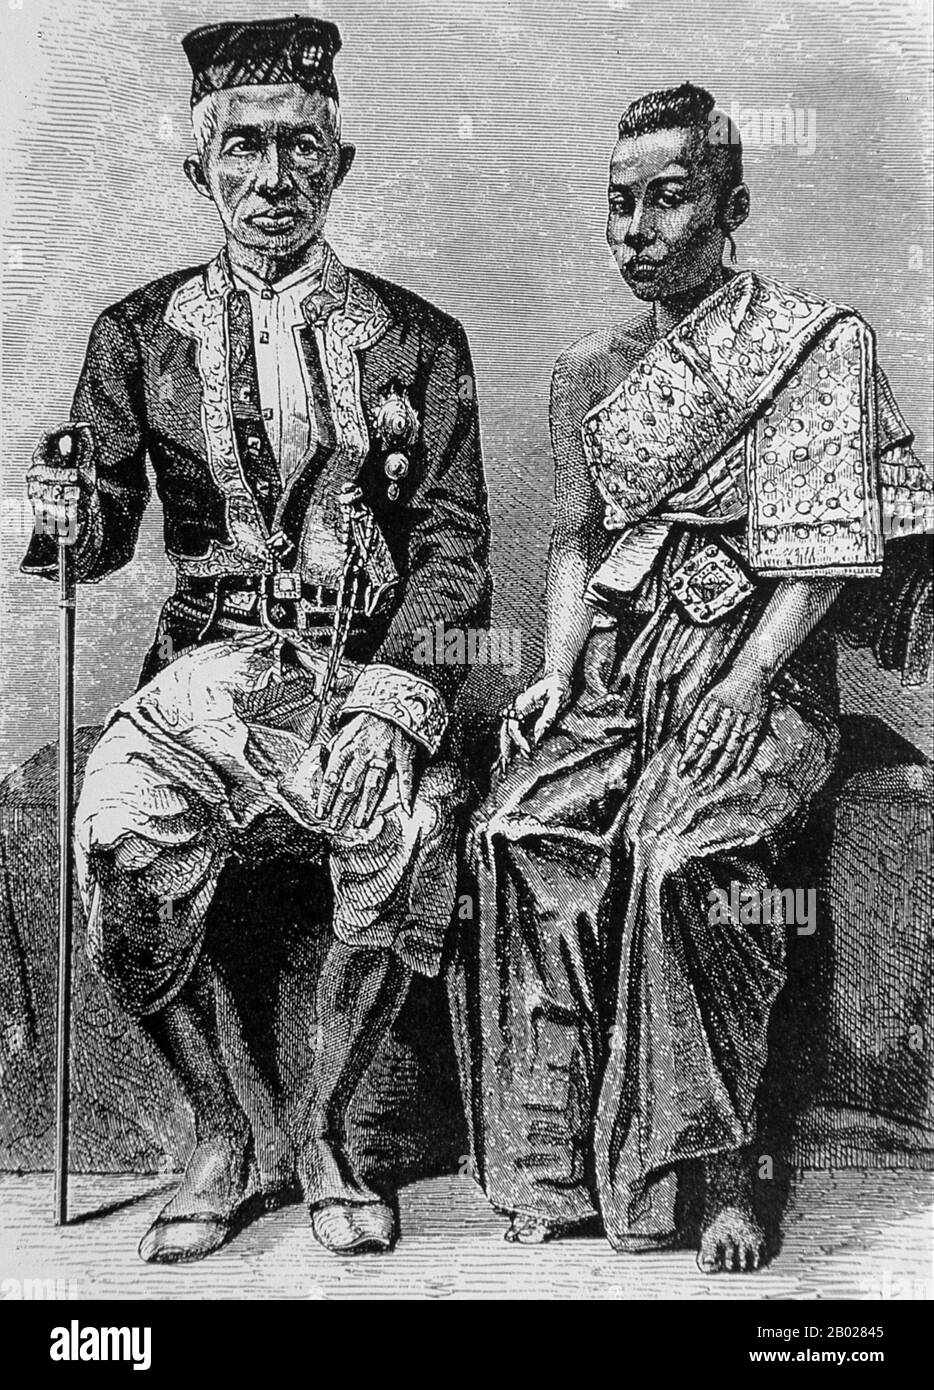 Phra Bat Somdet Phra Porametramaha Mongkut Phra Chom Klao Chao Yu Hua, o Rama IV, conosciuto in paesi stranieri come Re Mongkut (18 ottobre 1804 – 1 ottobre 1868), è stato il quarto monarca del Siam (Thailandia) sotto la Casa di Chakri, che ha regio dal 1851 al 1868. Era uno dei monarchi più venerati del paese. Al di fuori della Thailandia, è meglio conosciuto come il Re nel 1951 e il film del 1956 The King and i, basato sul film del 1946 Anna e il Re del Siam – a sua volta basato sul romanzo del 1944 sugli anni di Anna Leonowens alla sua corte, dal 1862 al 1867. Foto Stock